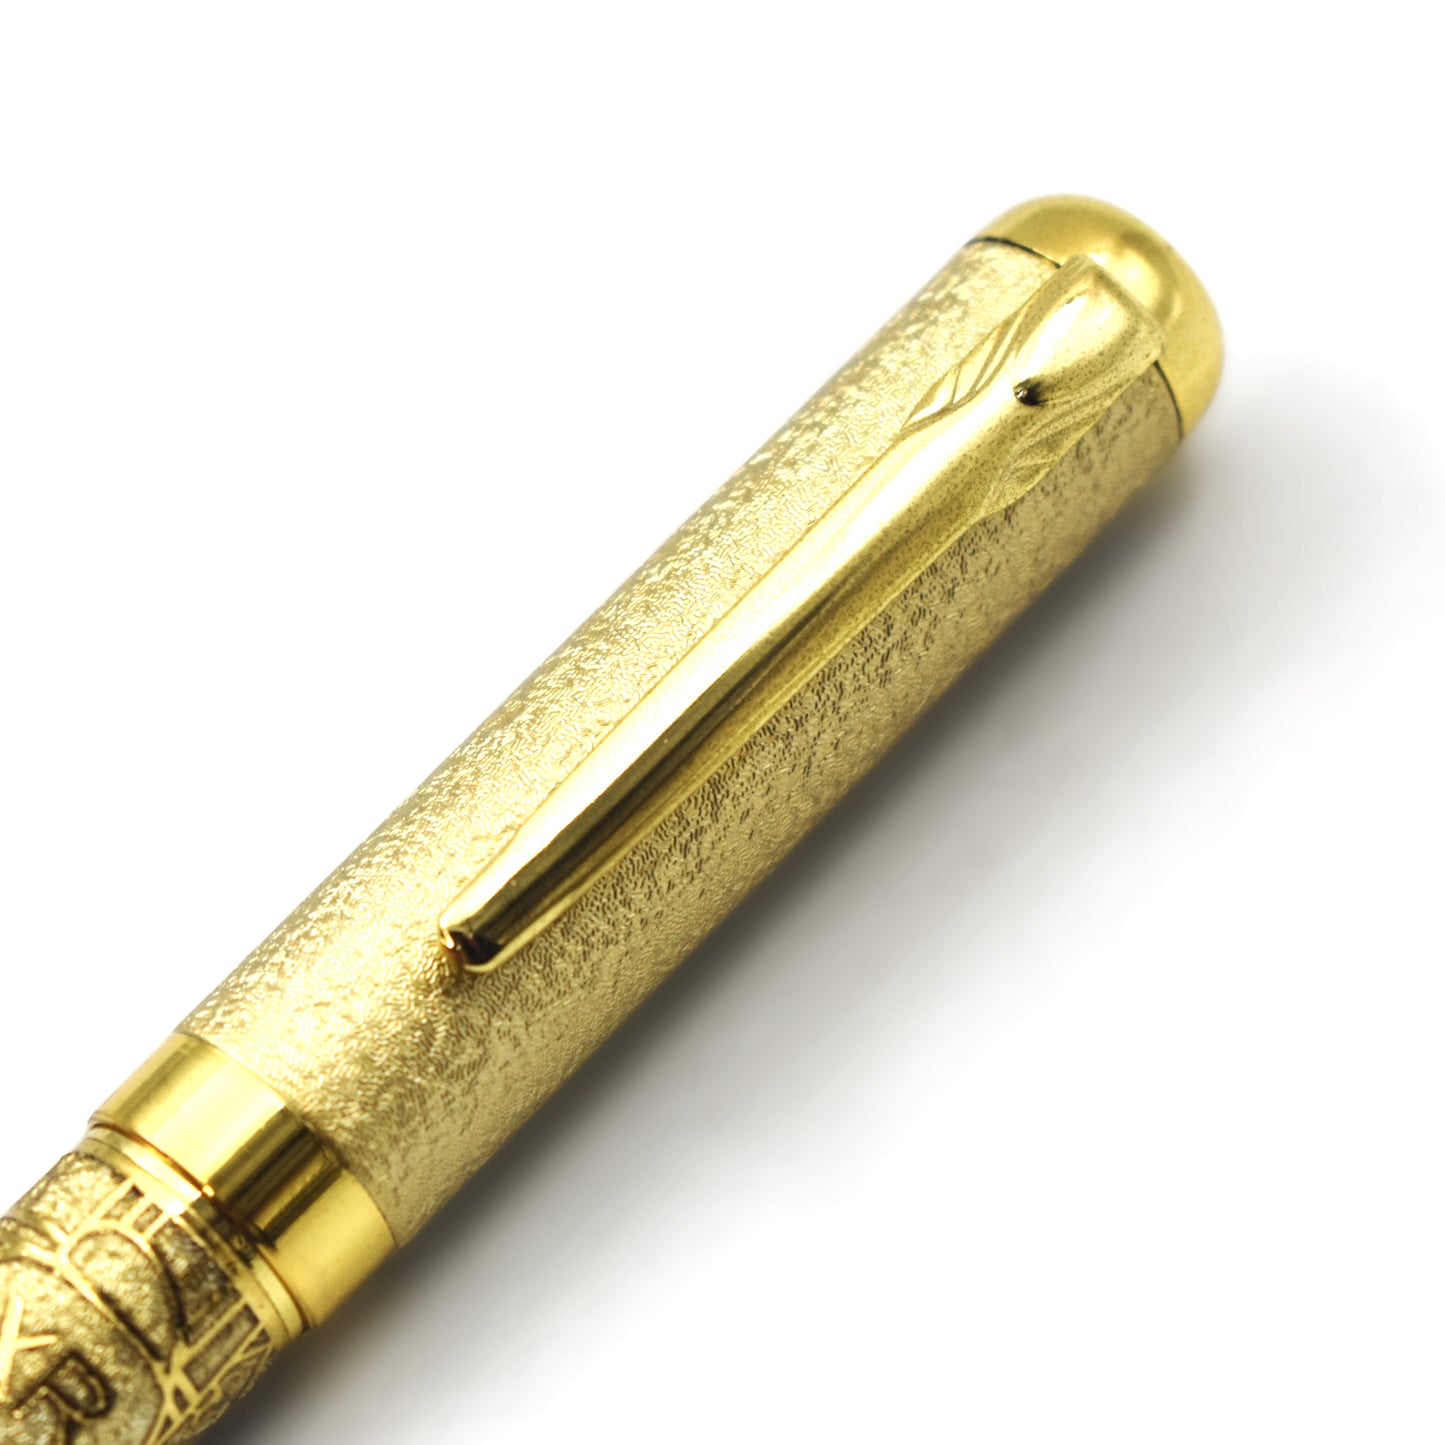 Premium Quality Luxury Imported Pen | Pen 1004